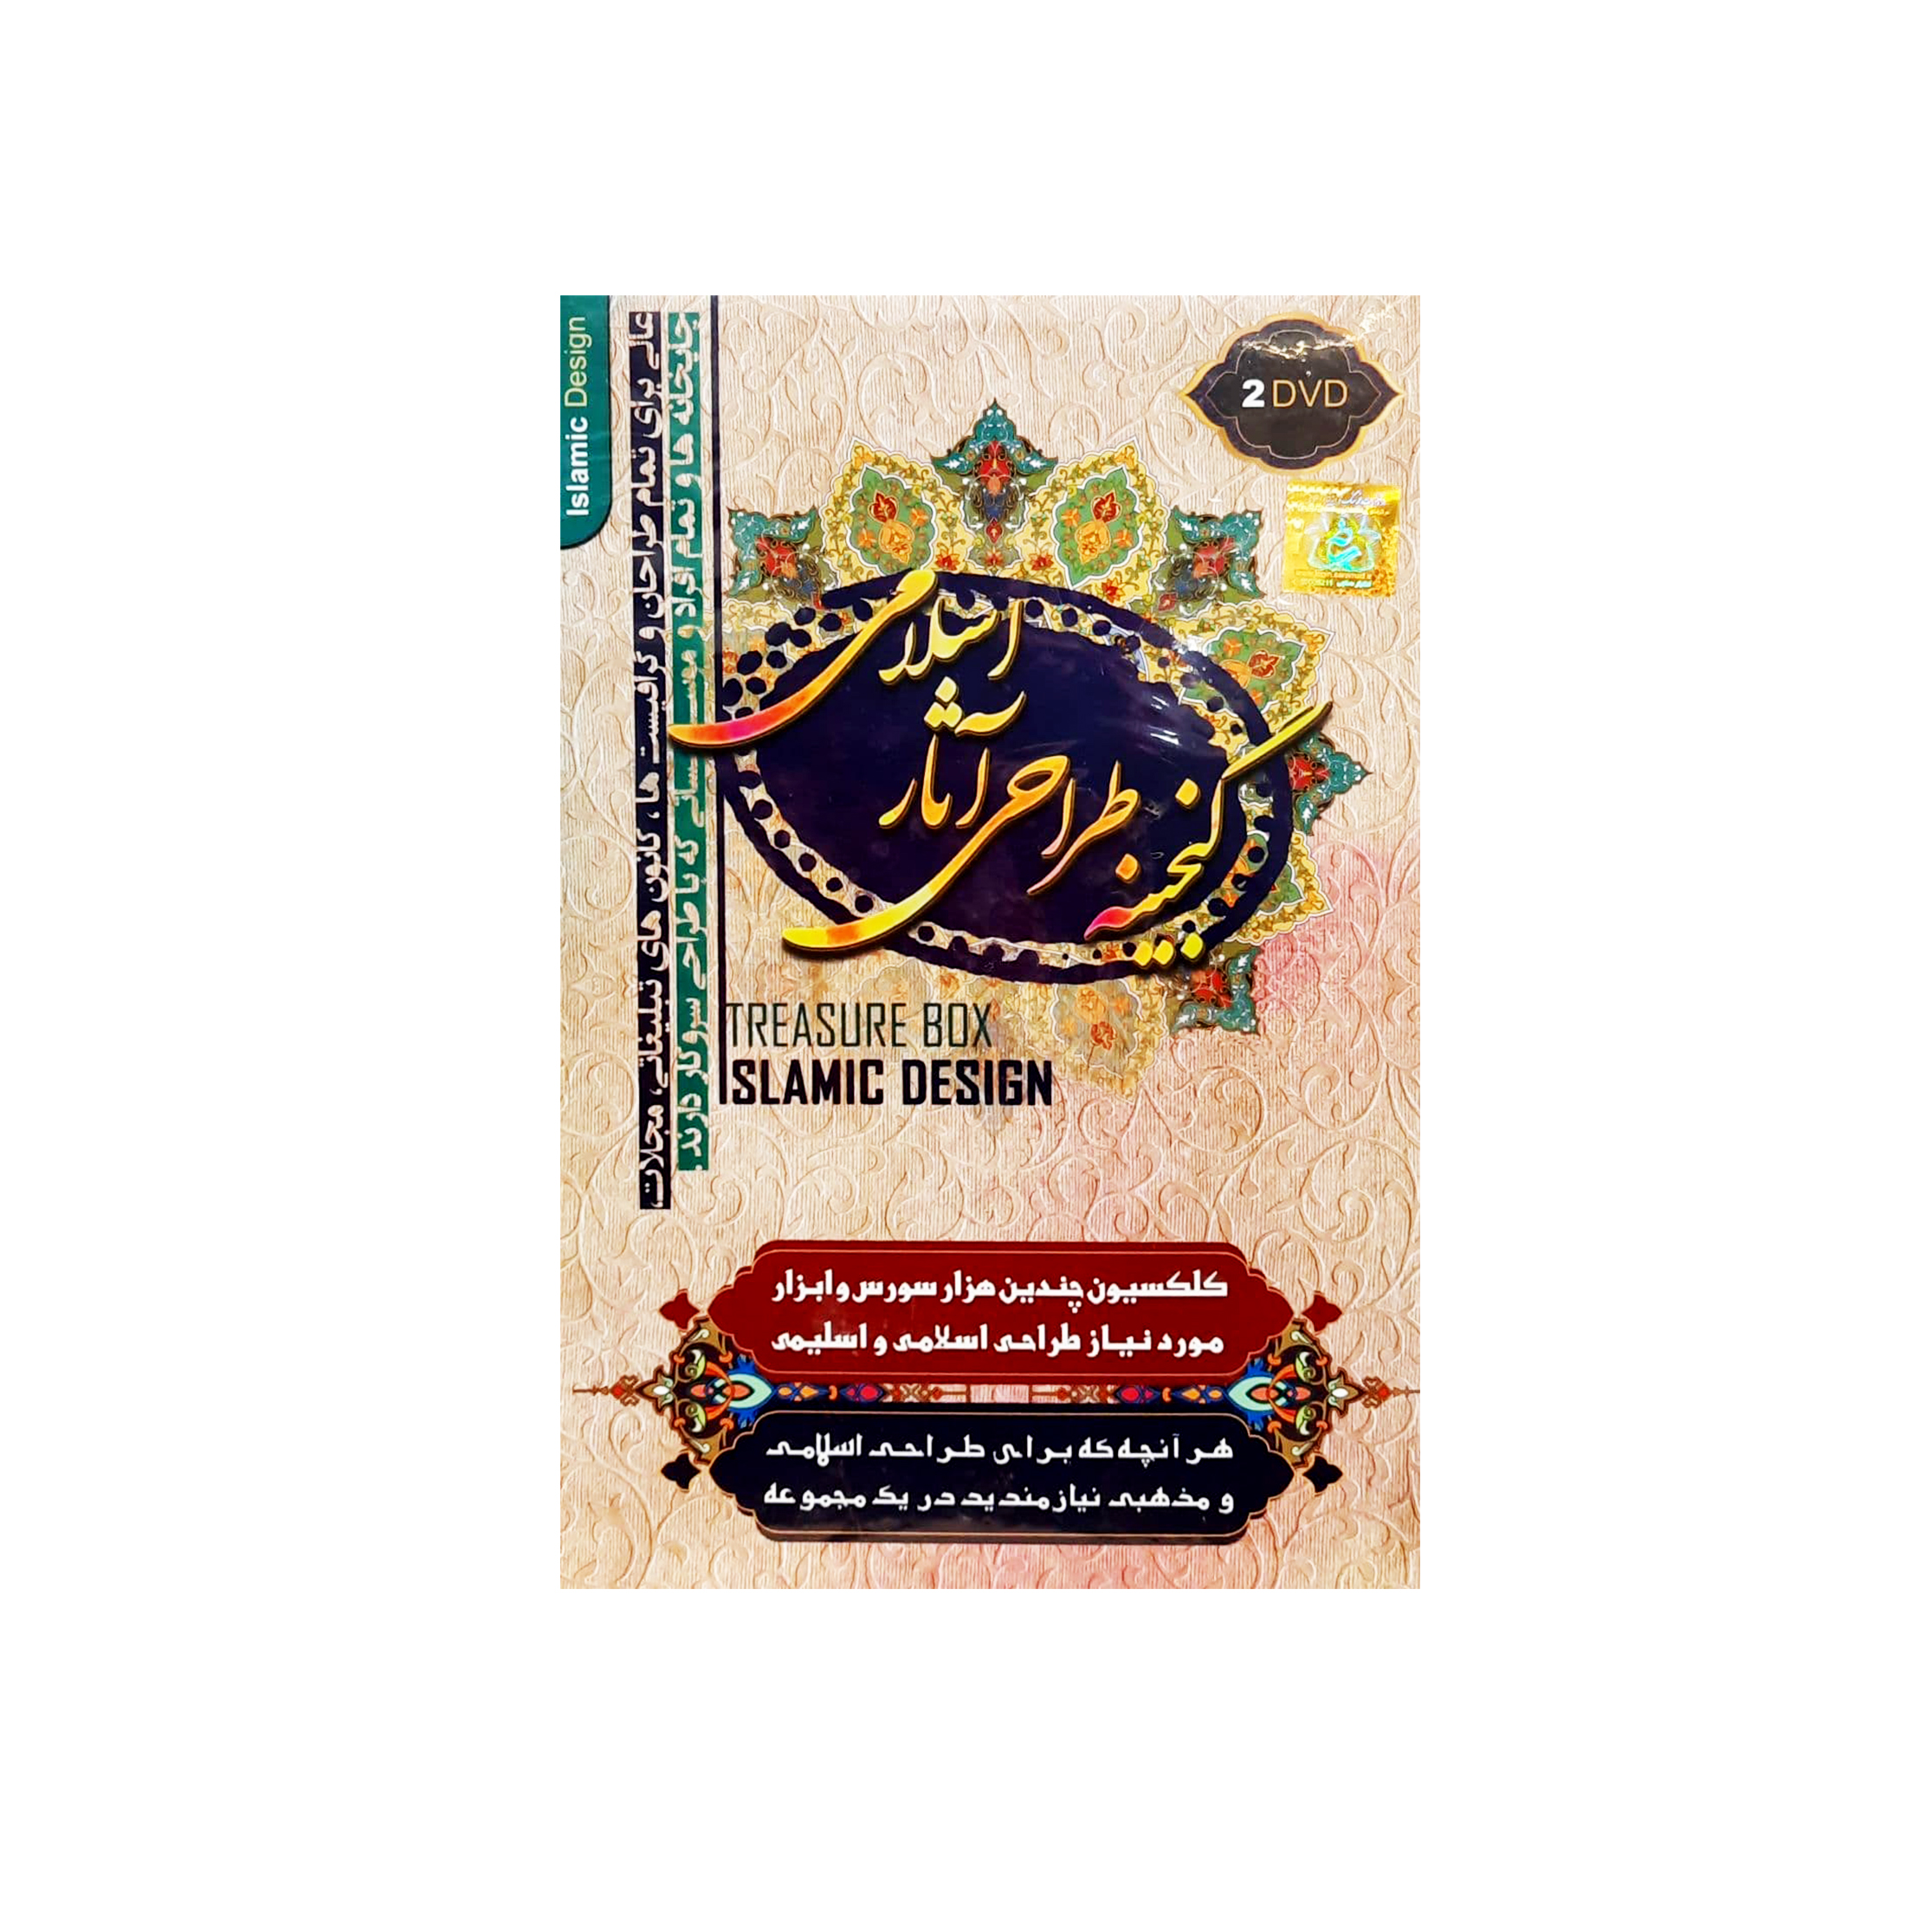 نرم افزار آموزش گنجینه طراحی آثار اسلامی و اسلیمی و مذهبی نشر آریا